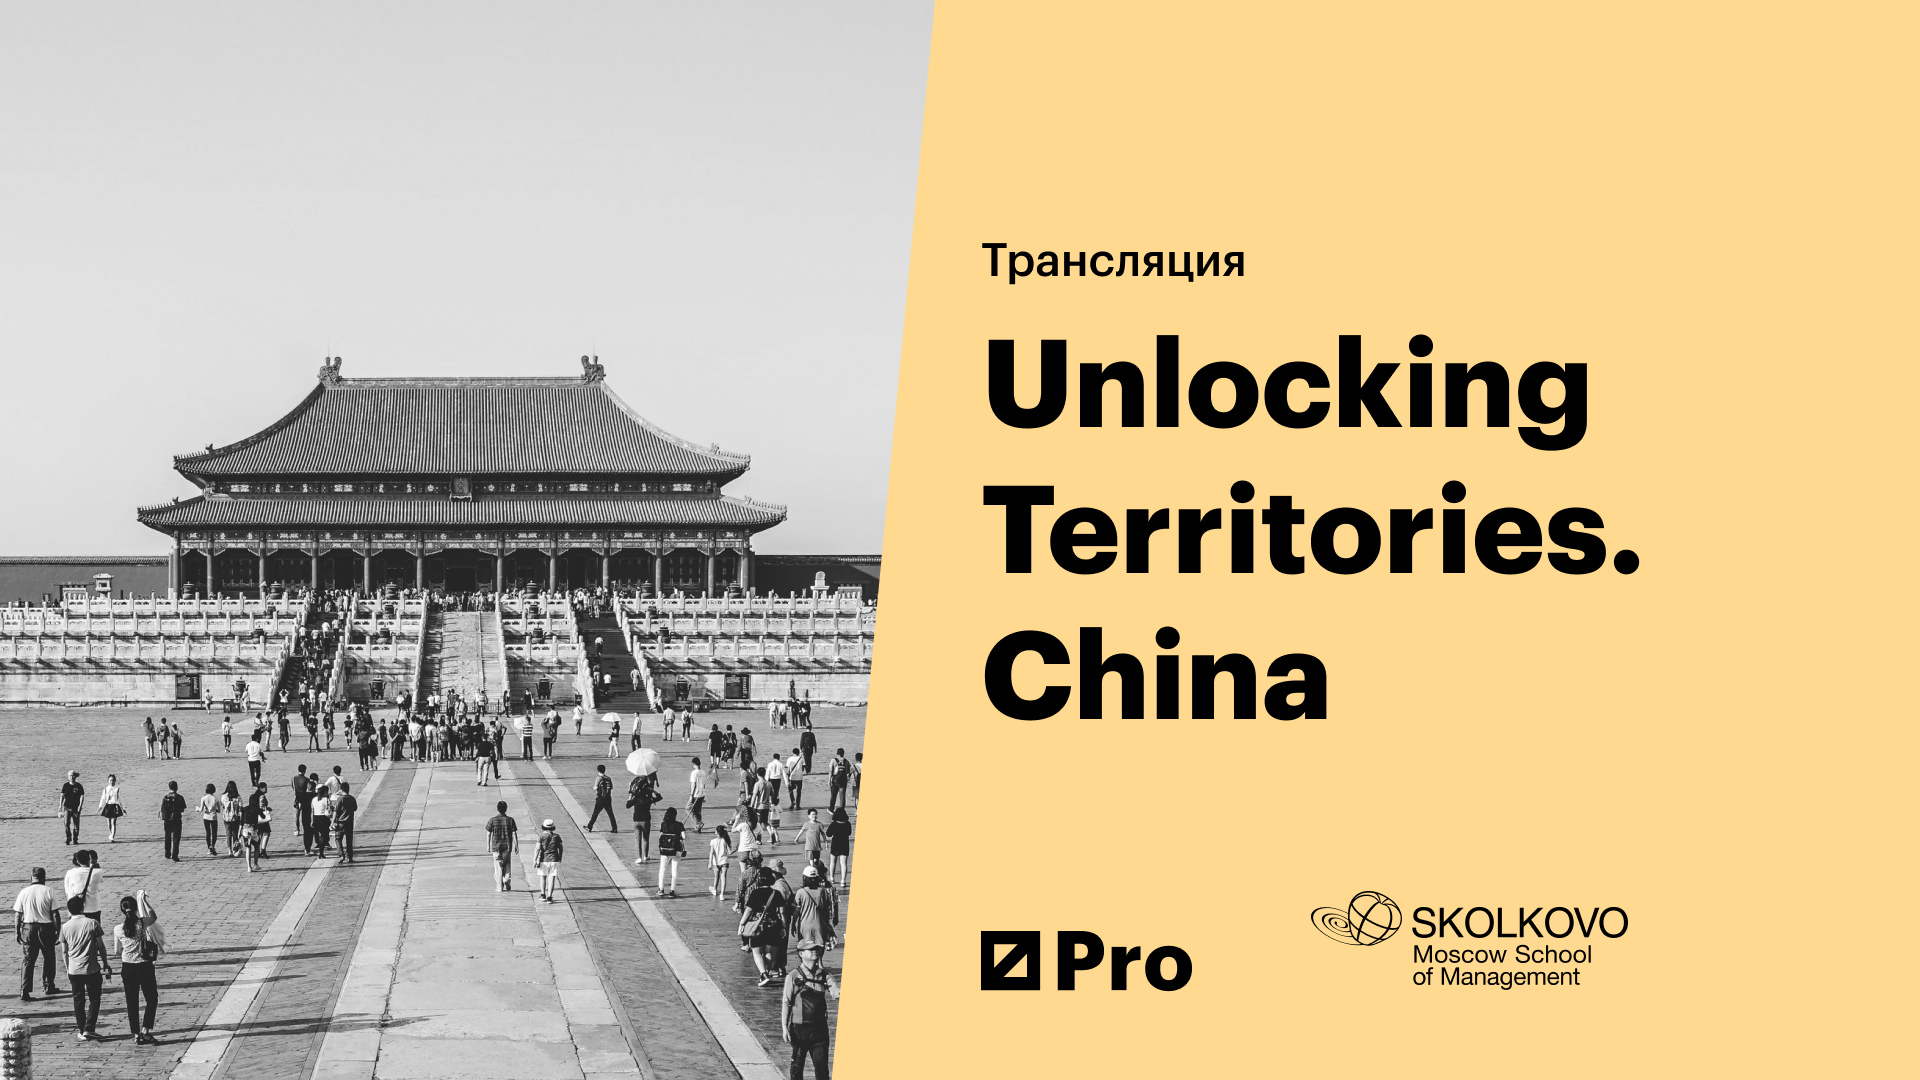 Unlocking Territories. China